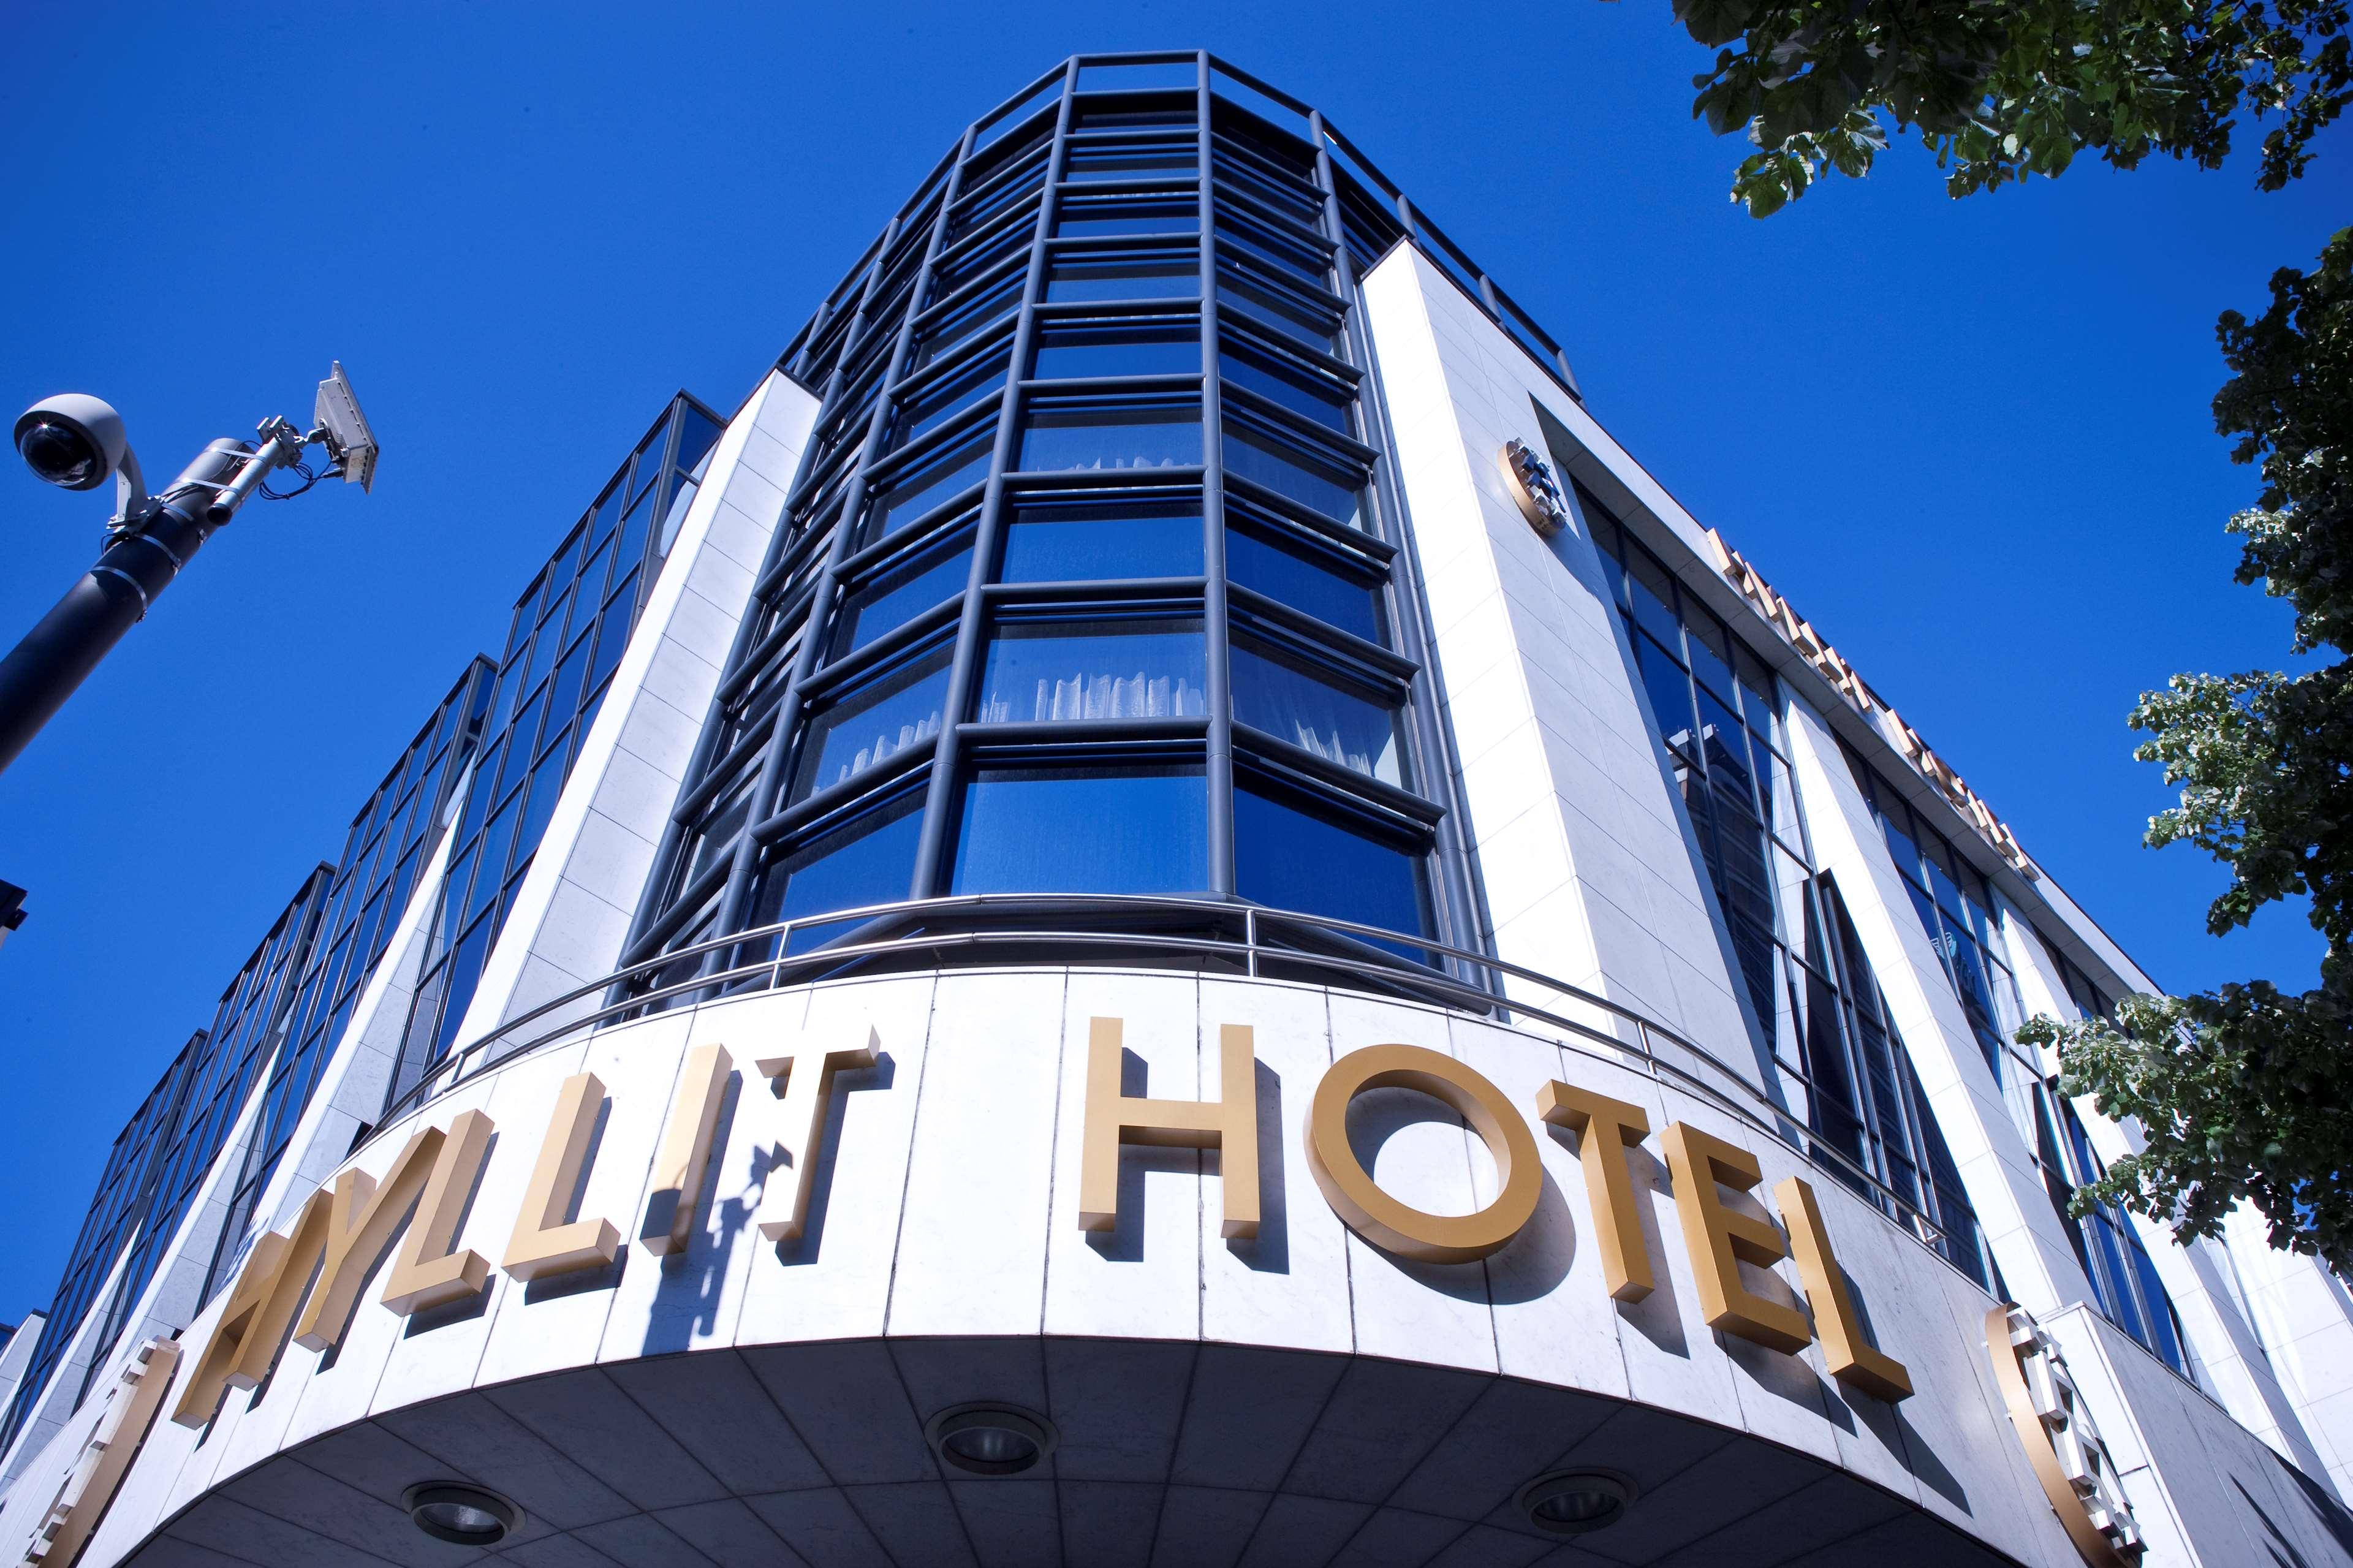 Hyllit Hotel image